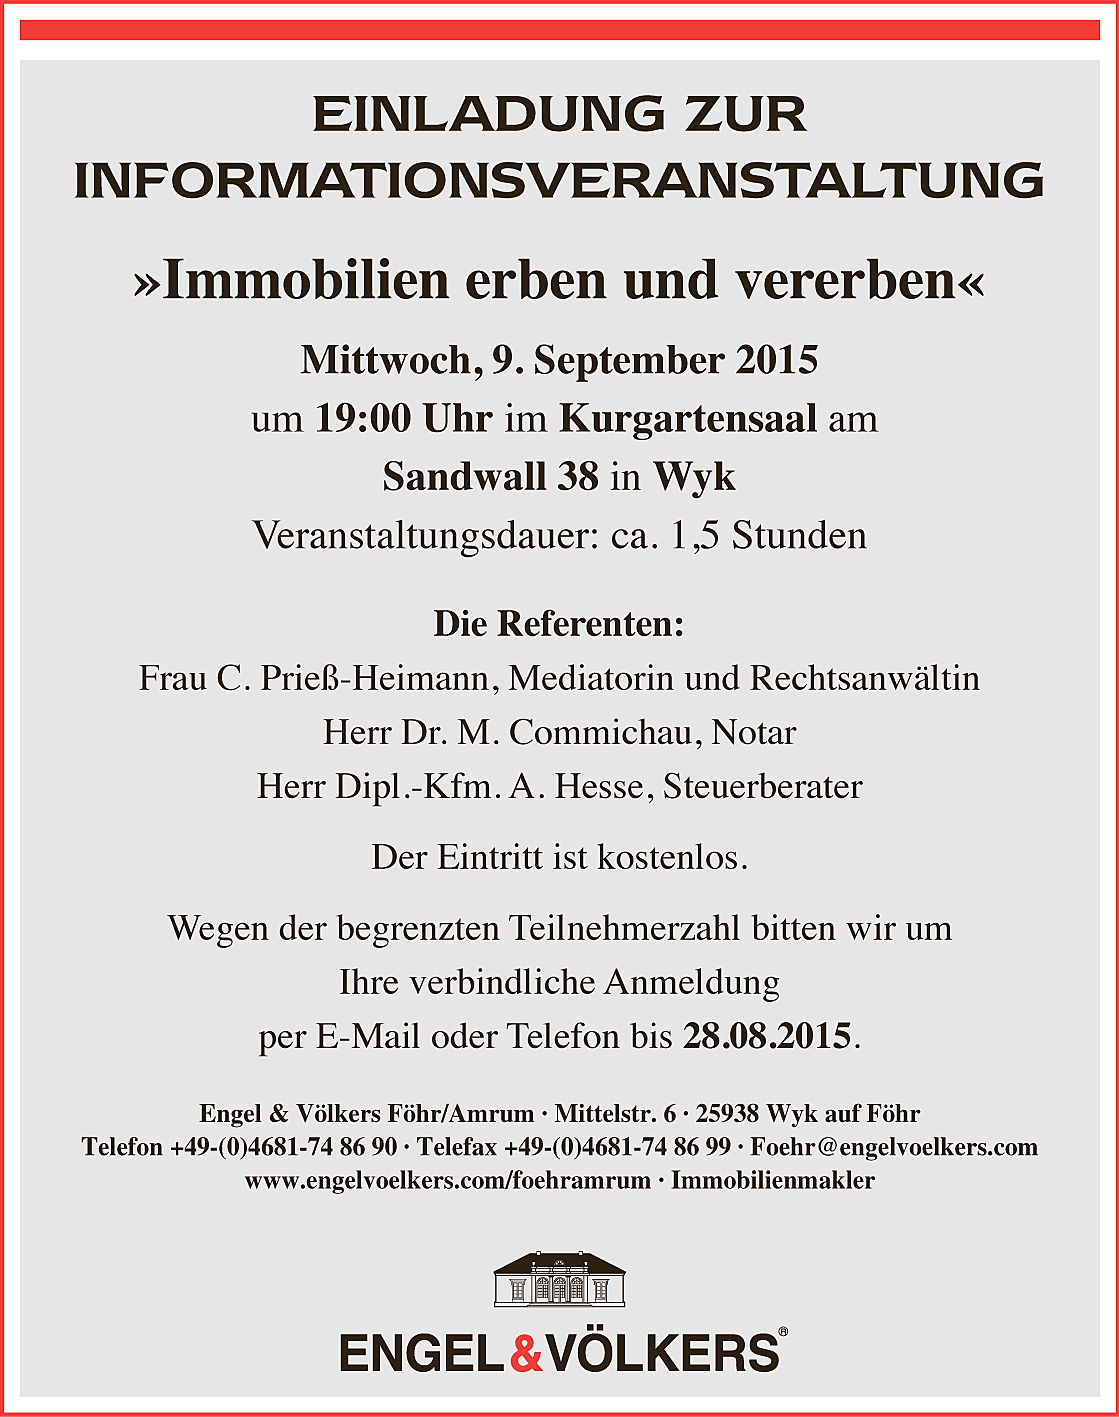  Wyk auf Föhr
- Informationsveranstaltung "Immobilien erben und vererben" im Kurgartensaal, Sandwlall 38, 25938 Wyk auf Föhr